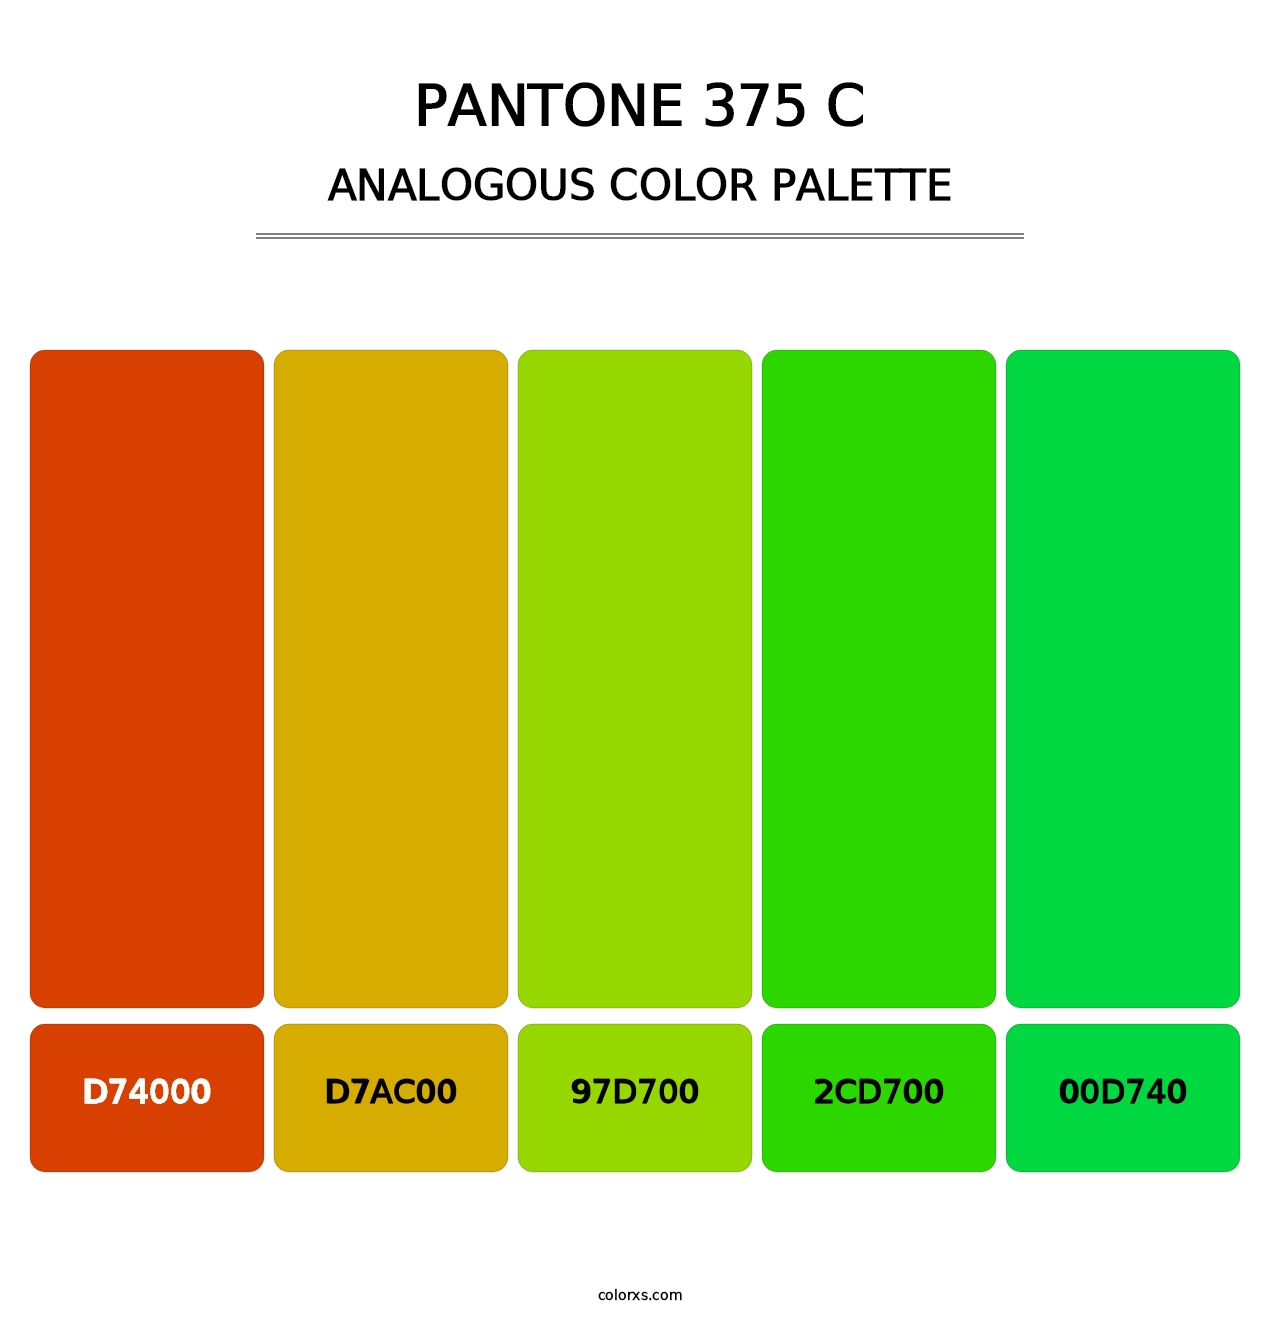 PANTONE 375 C - Analogous Color Palette